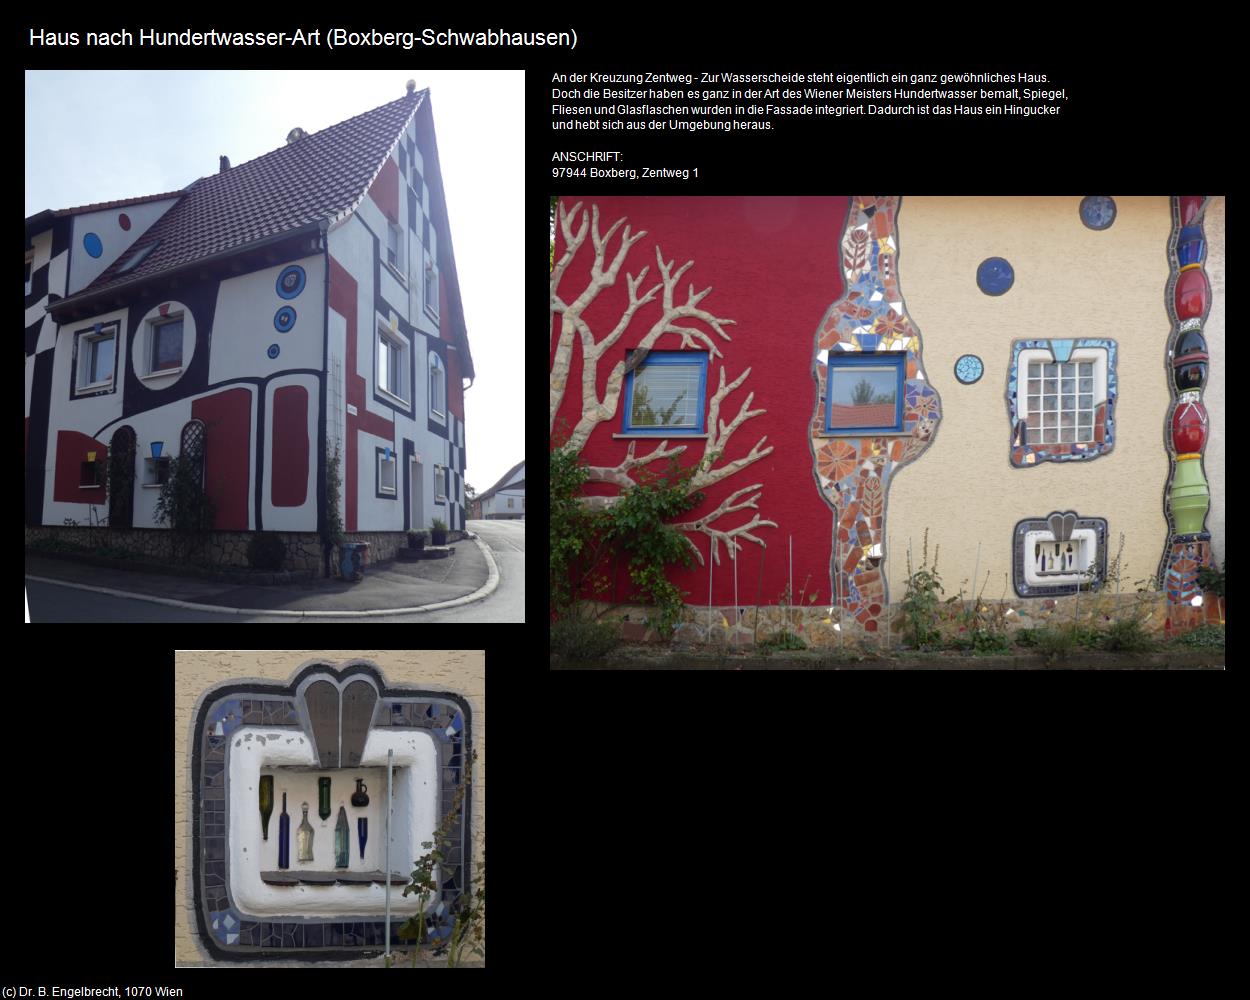 Haus nach Hundertwasser-Art (Schwabhausen)  (Boxberg) in Kulturatlas-BADEN-WÜRTTEMBERG